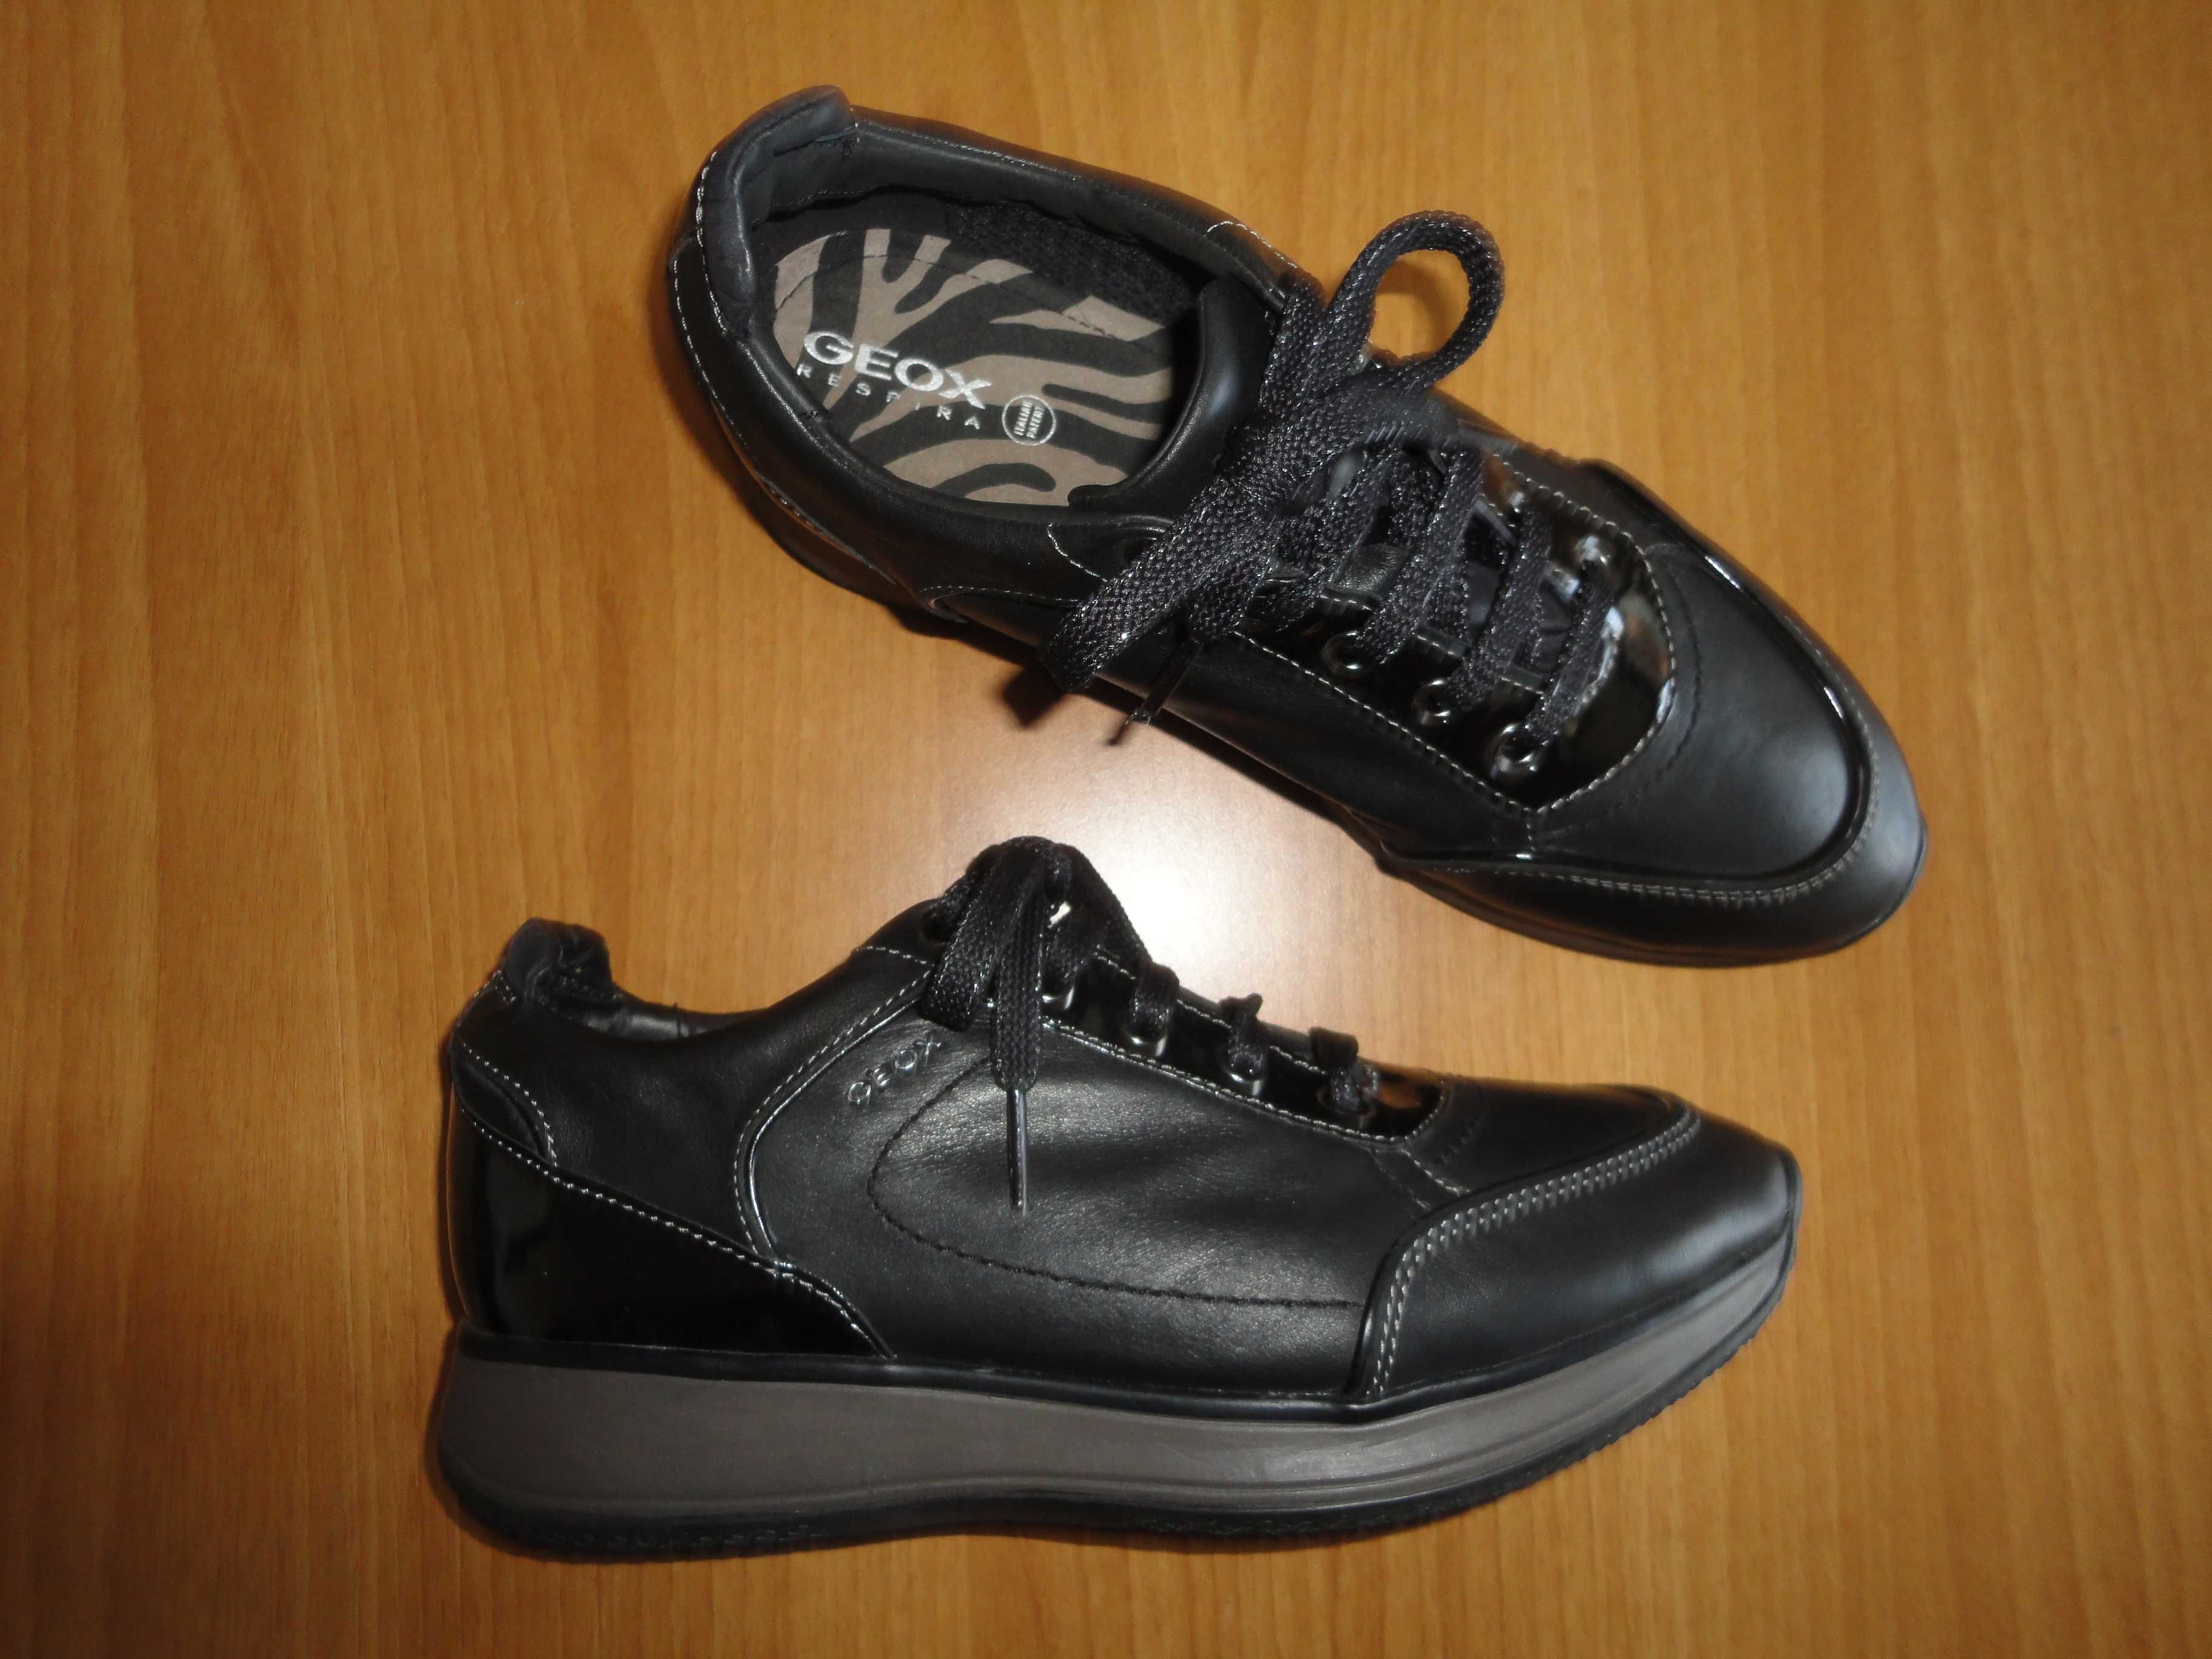 N39 GEOX/естествена кожа/оригинални дамски обувки